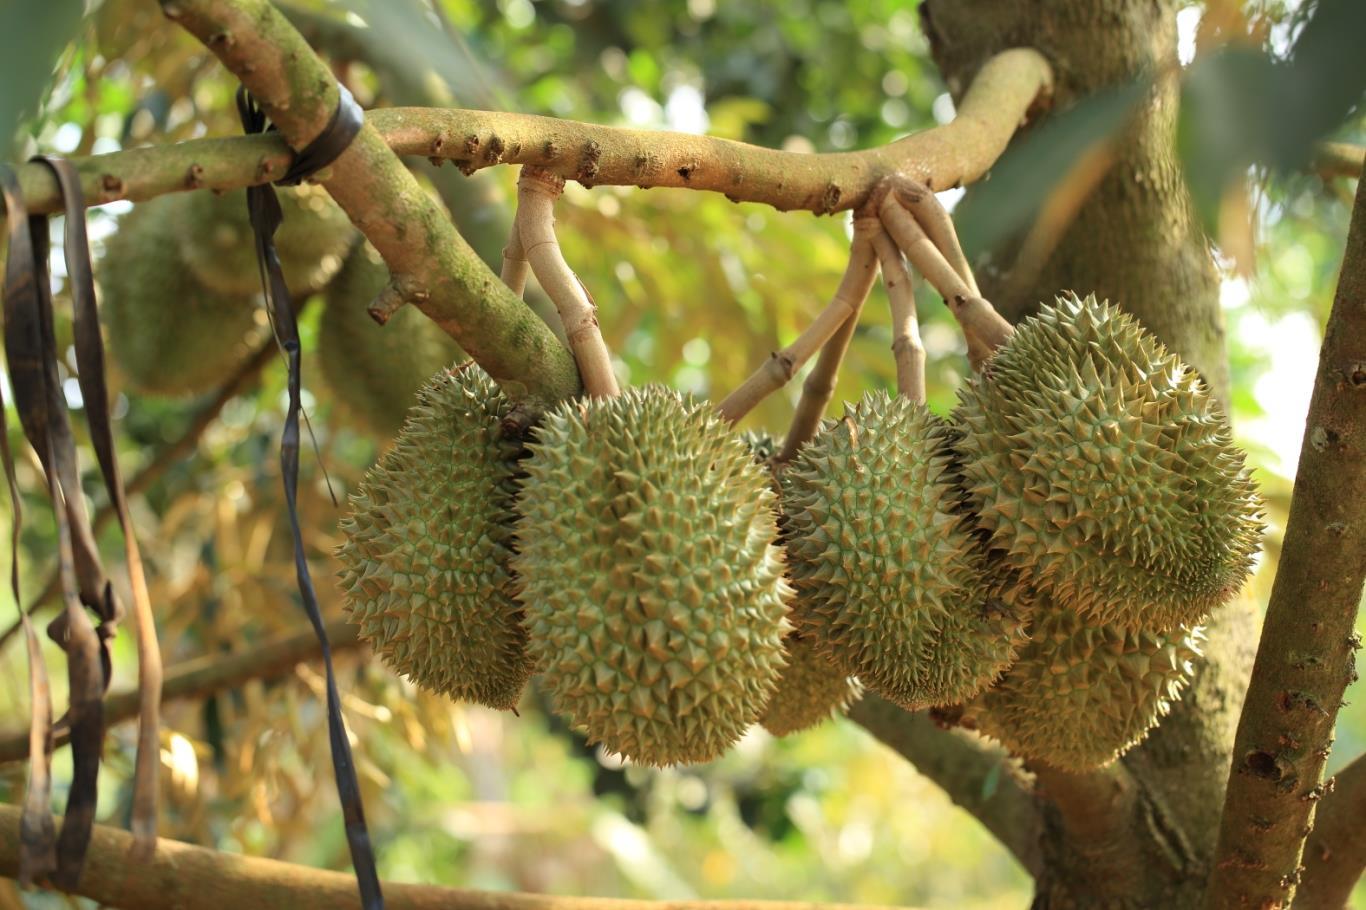 Ghé vườn trái cây Nam Mỹ Khánh nhớ thưởng thức trái sầu riêng nha các bạn!